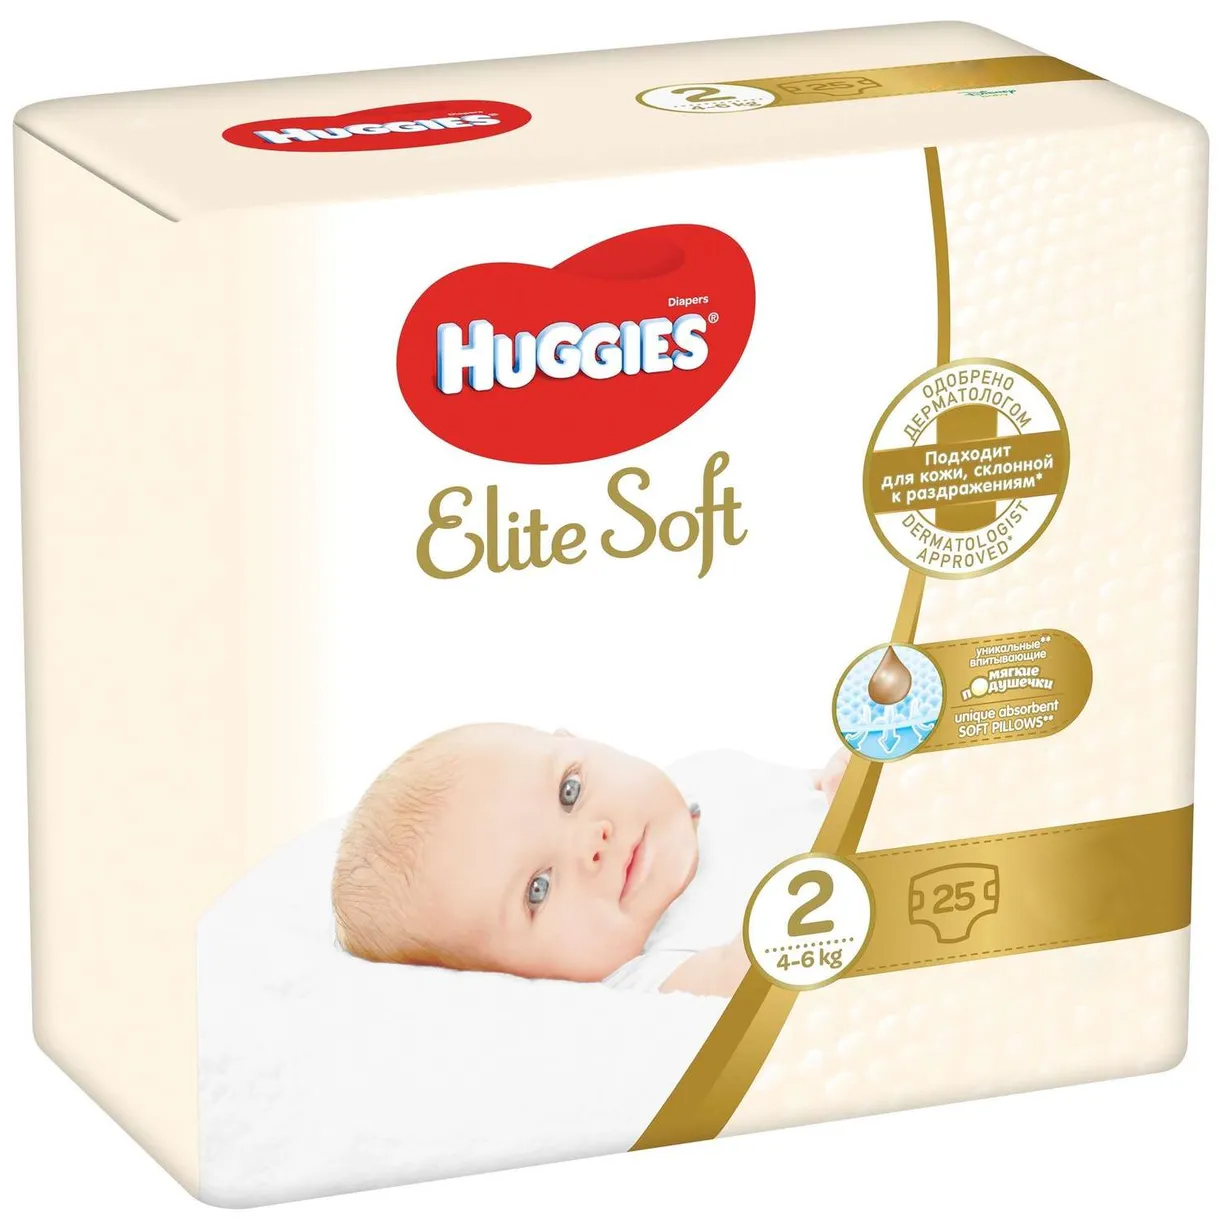 Подгузники Huggies Elite Soft для новорожденных 2 4-6кг 25шт - фото 2